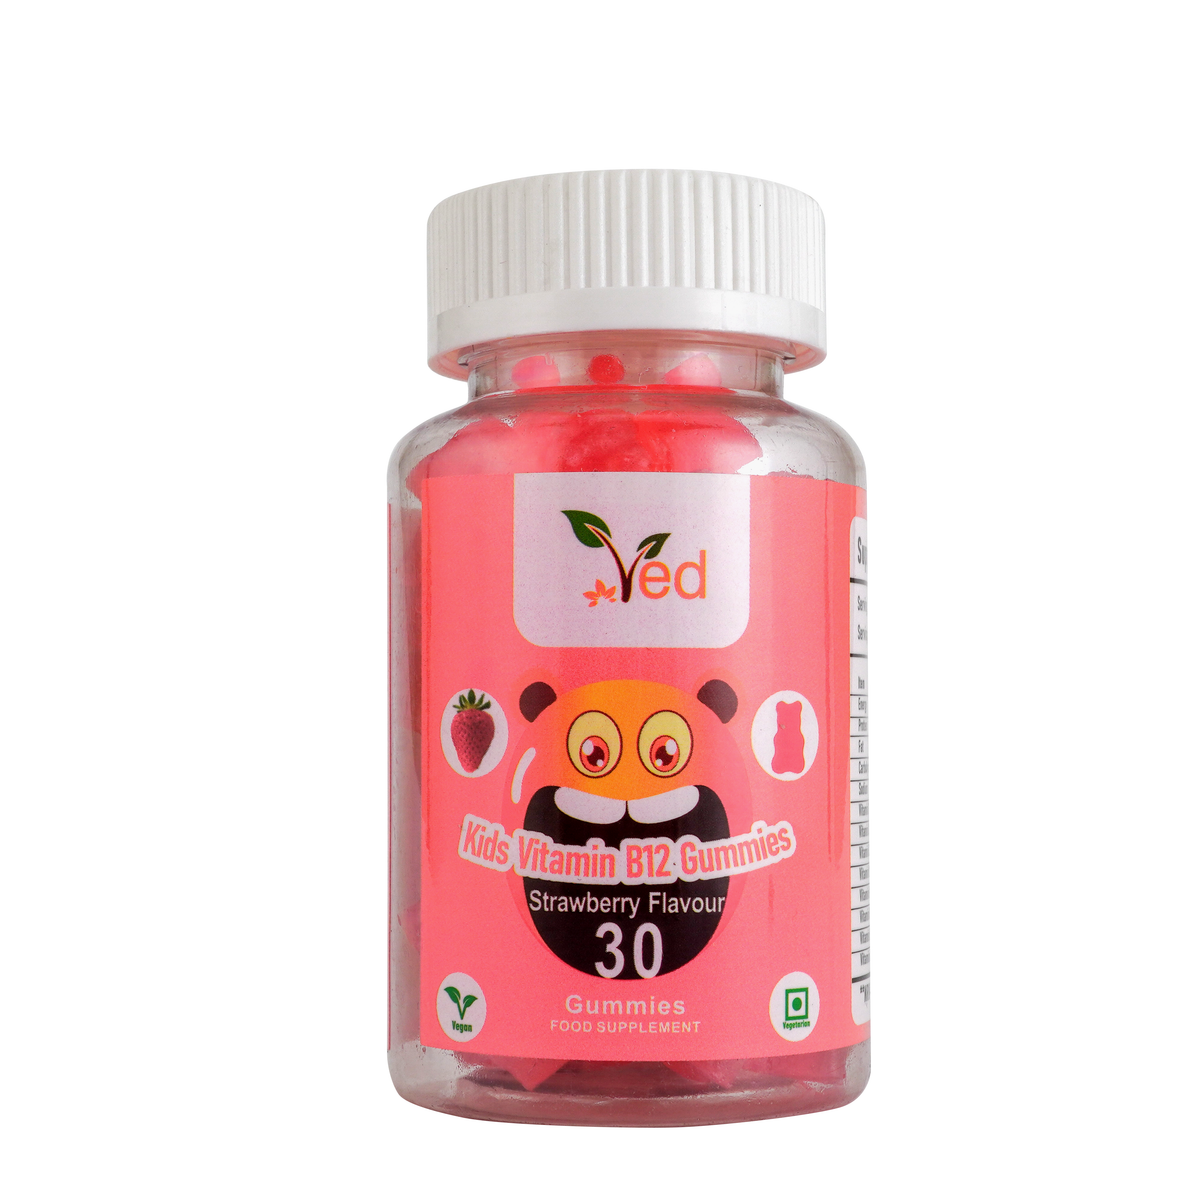 Kids Vitamin B12 Gummies Strawberry flavor 30 gummies/bottle